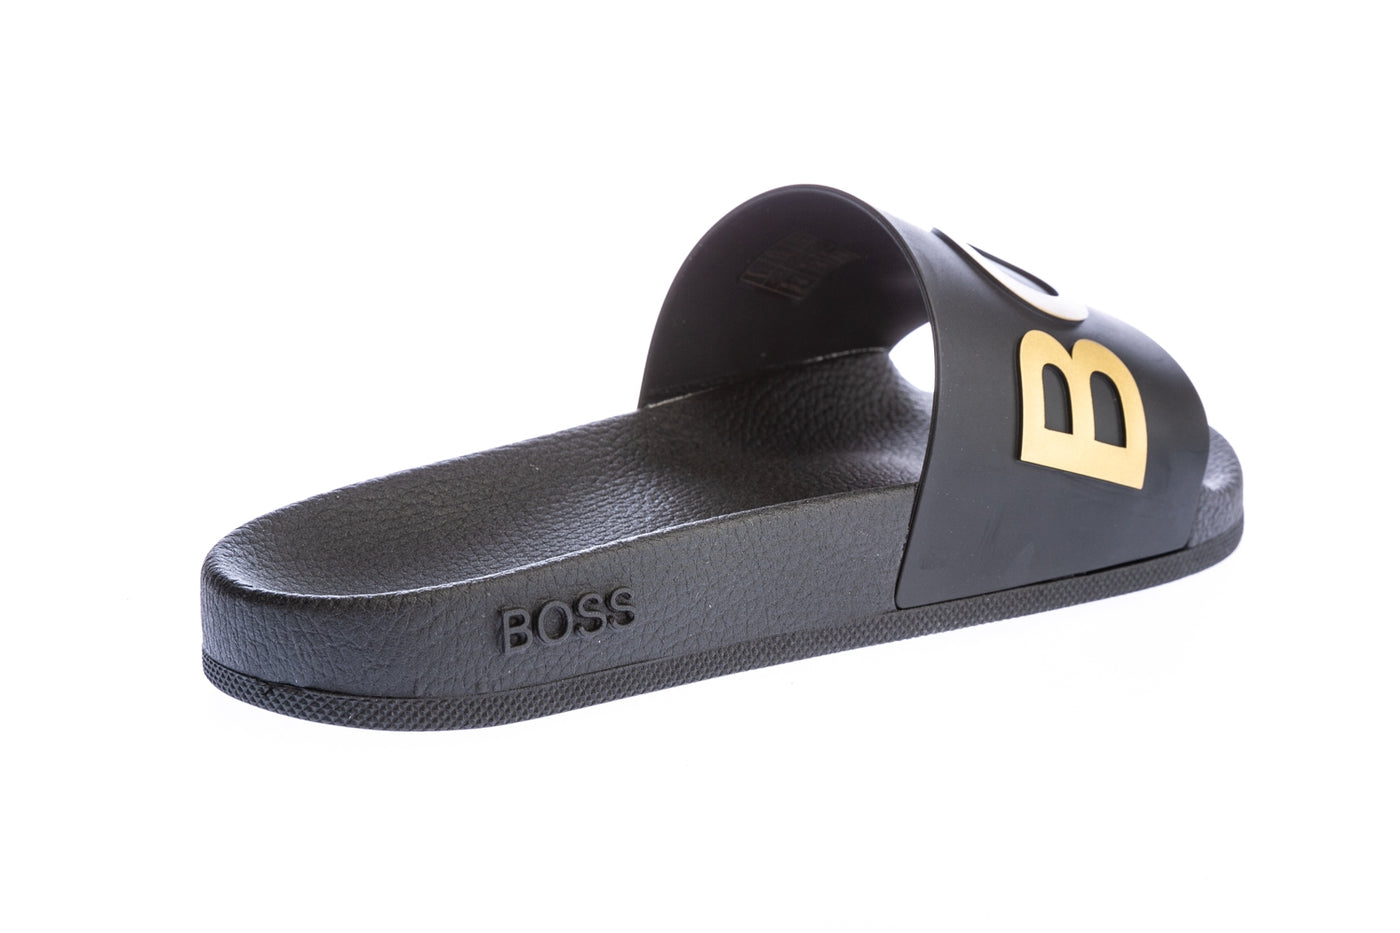 BOSS Bay_Slid Slide in Black & Gold